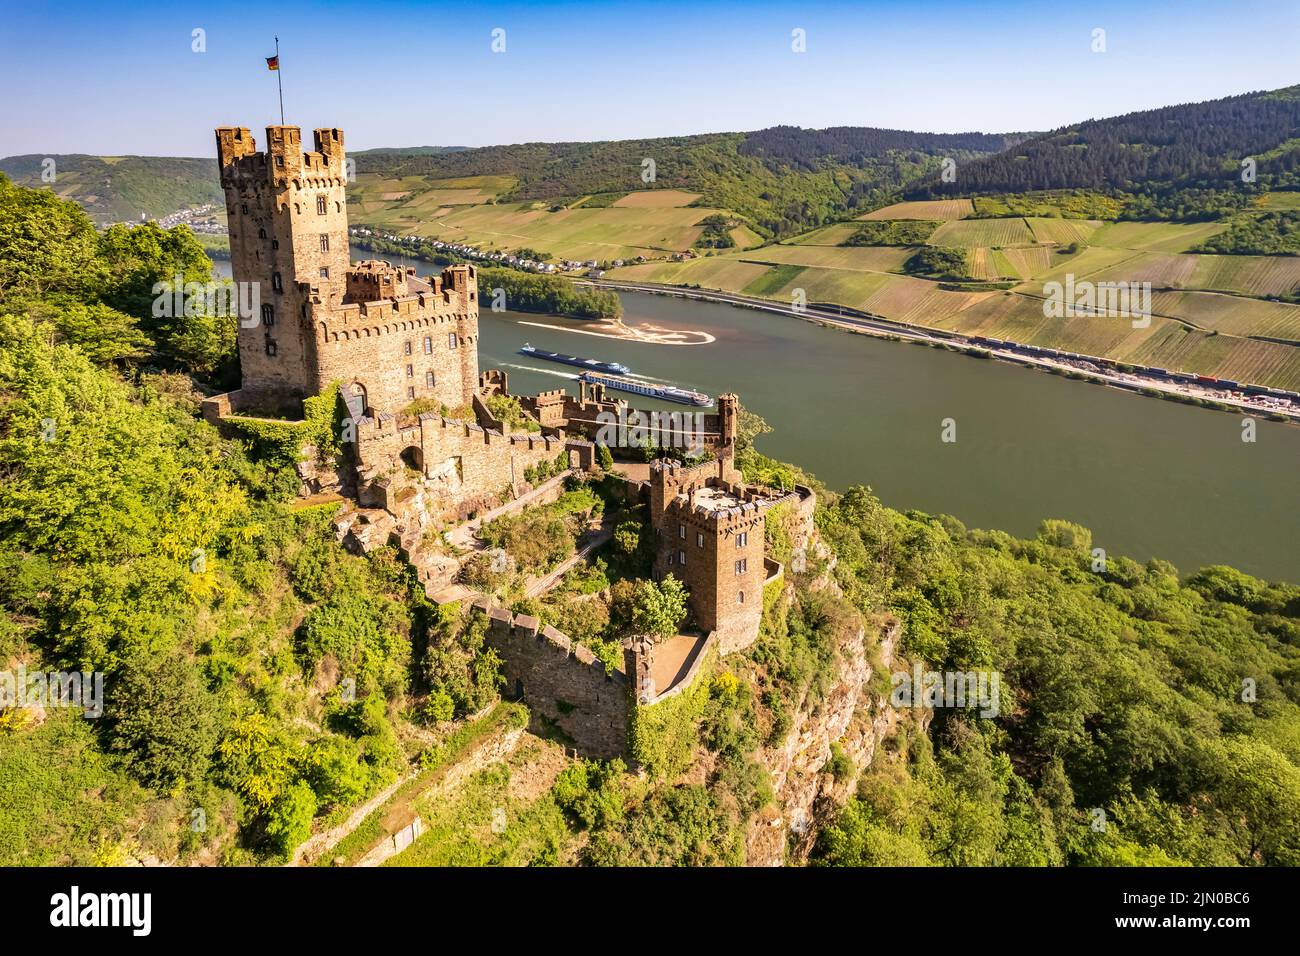 Burg Sooneck und der Rhein bei Niederheimbach, Welterbe Oberes Mittelrheintal, Rheinland-Pfalz, Deutschland,   |  Burg Sooneck castle and the Rhine ri Stock Photo